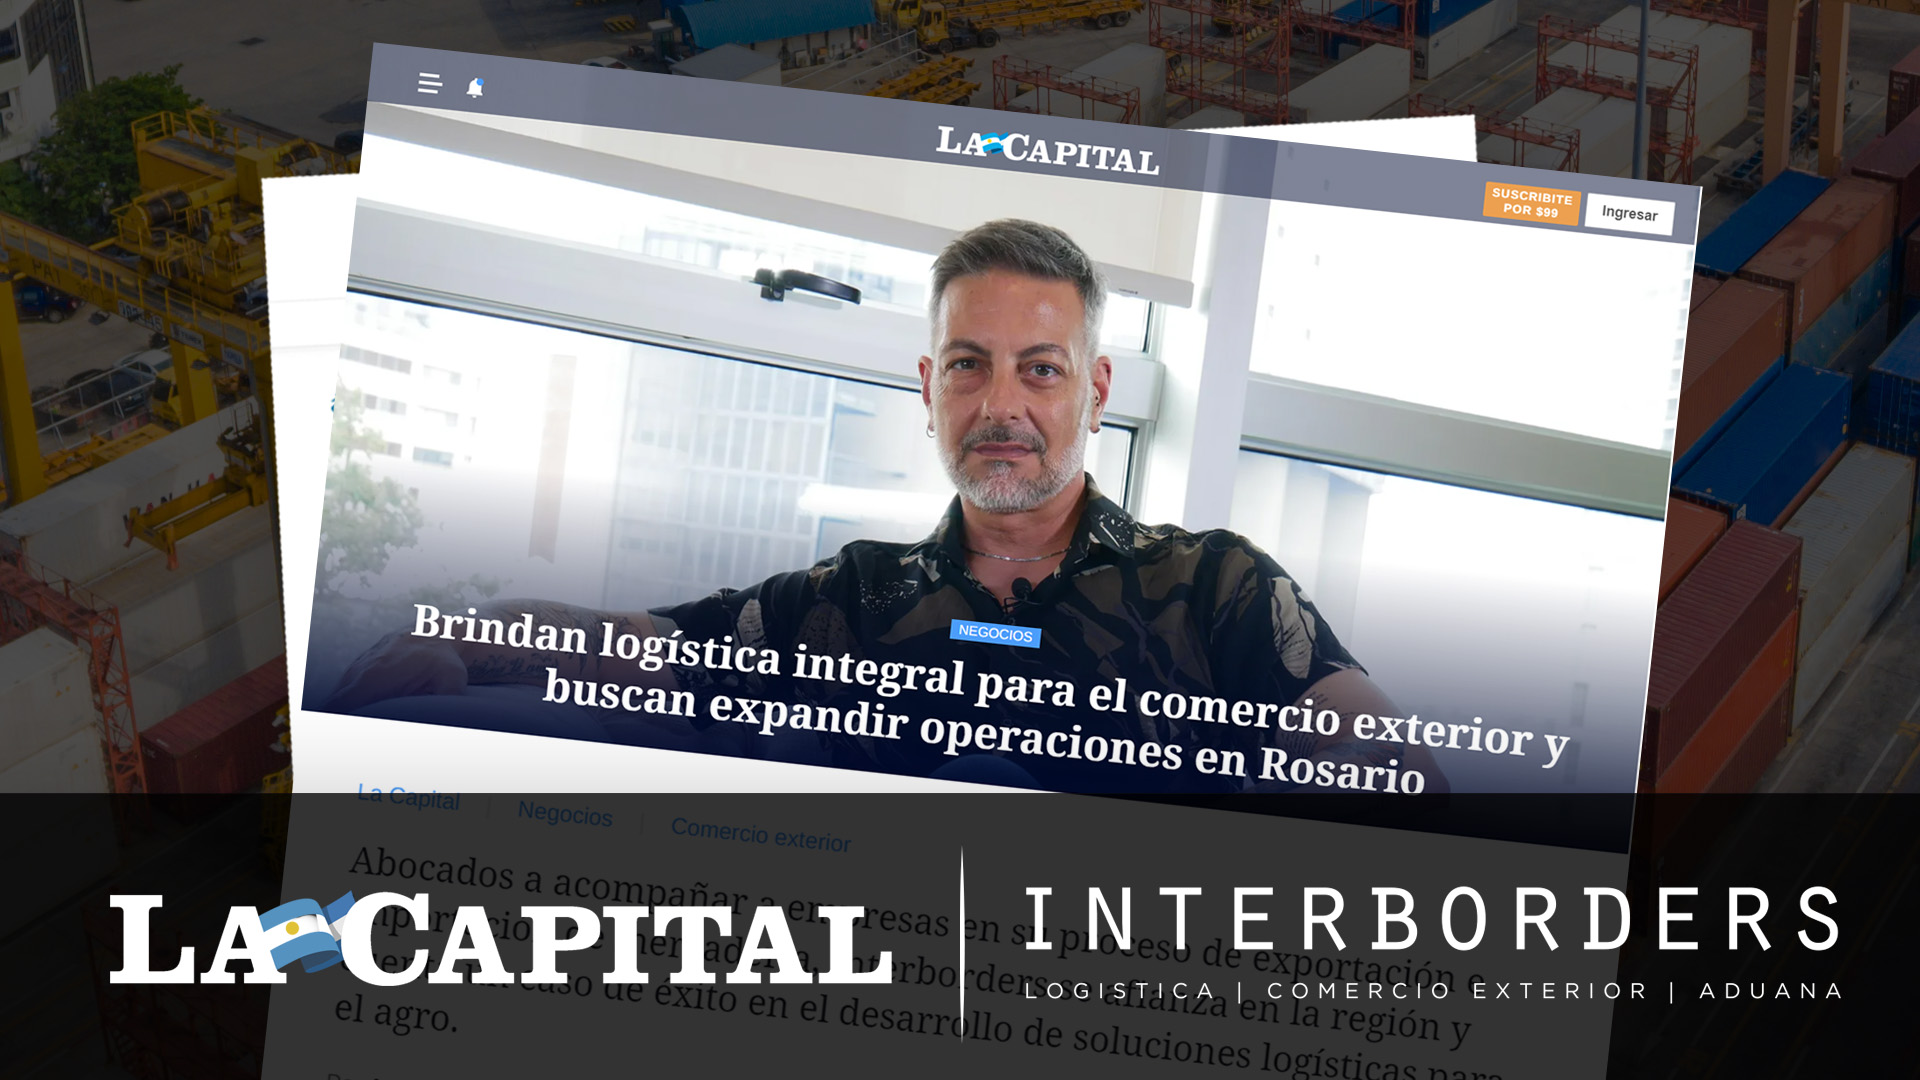 Brindan logística integral para el comercio exterior y buscan expandir operaciones en Rosario | Interborders